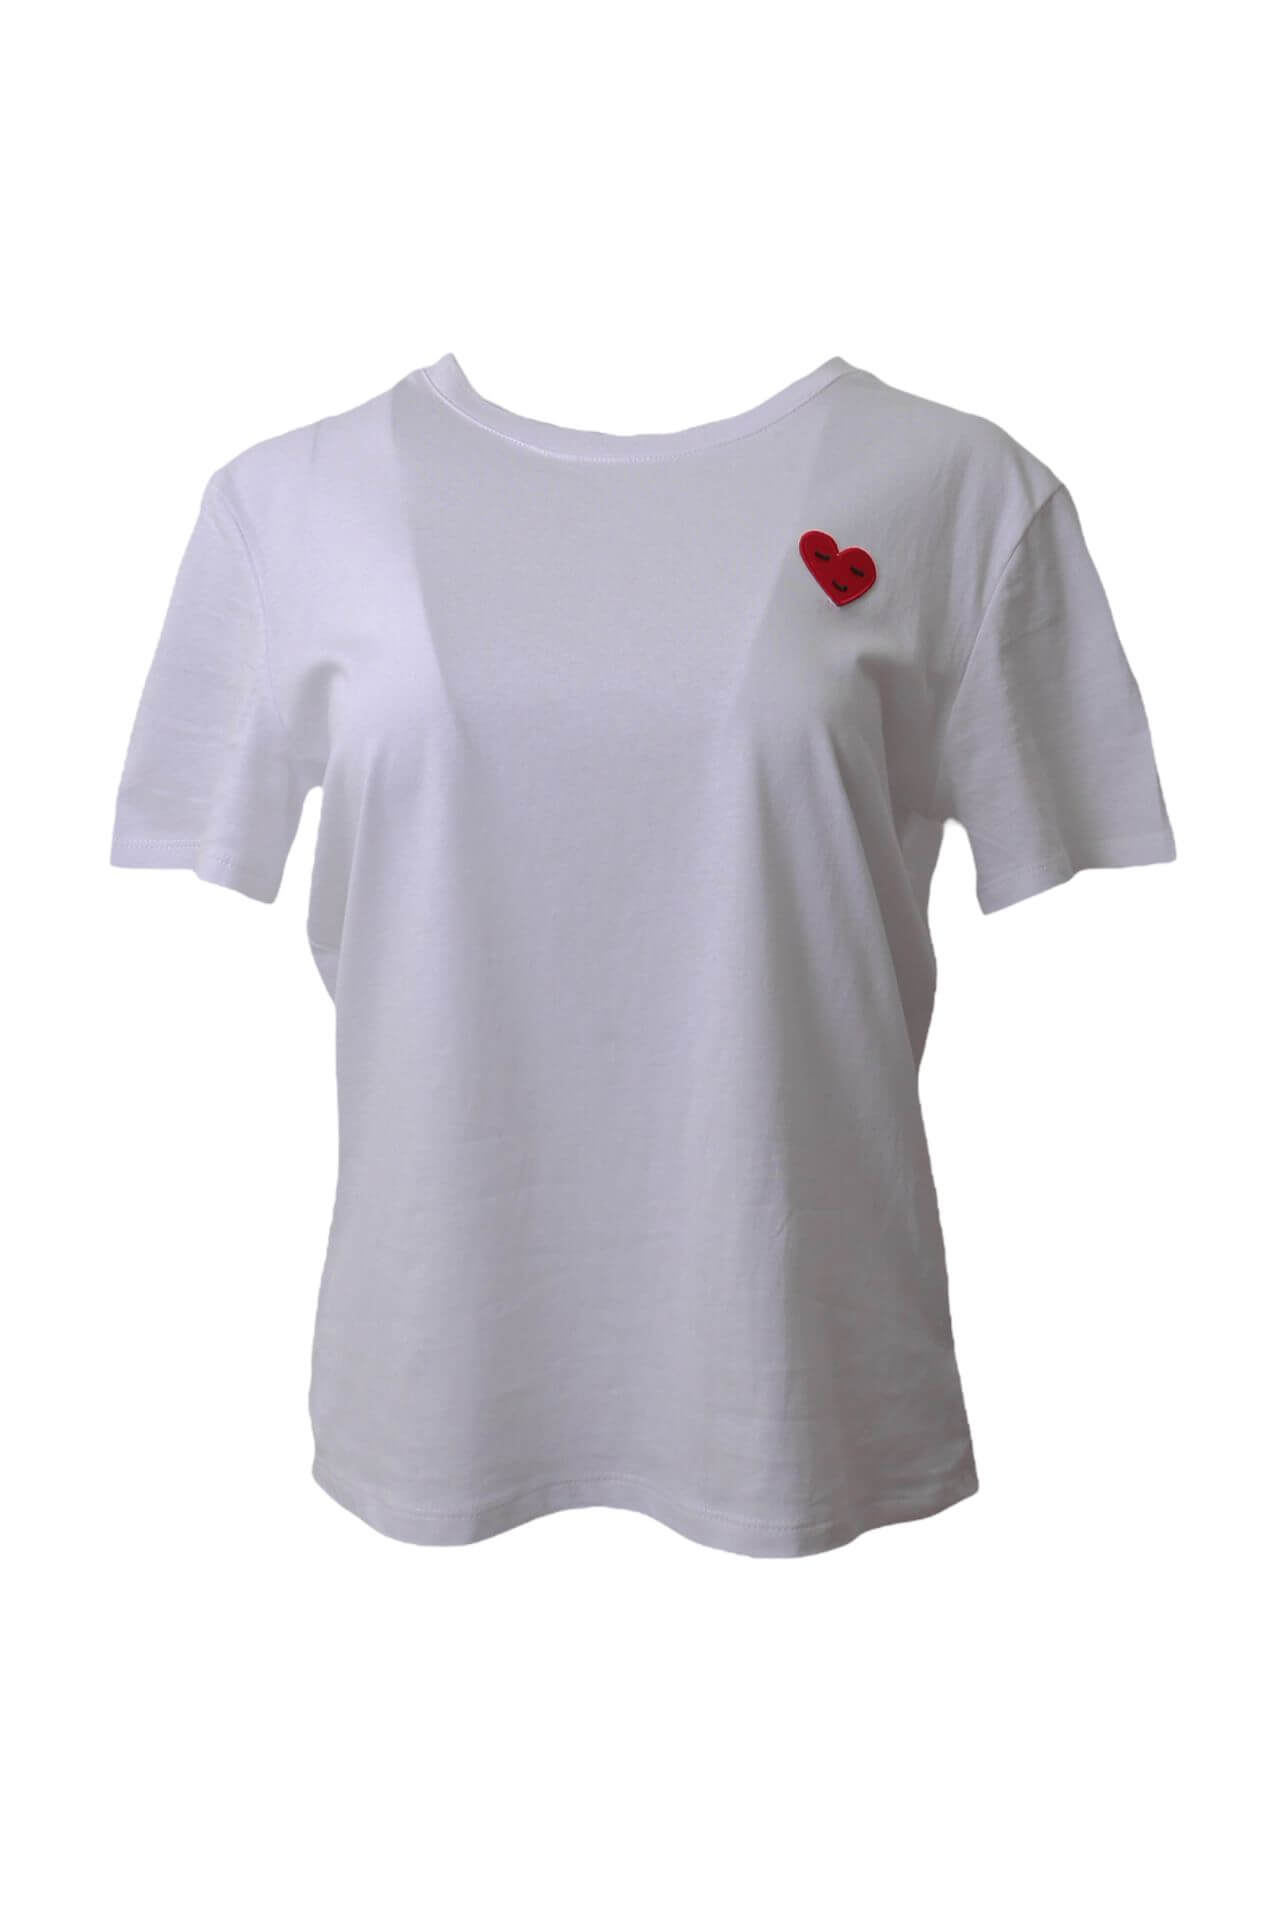 T-Shirt Heart